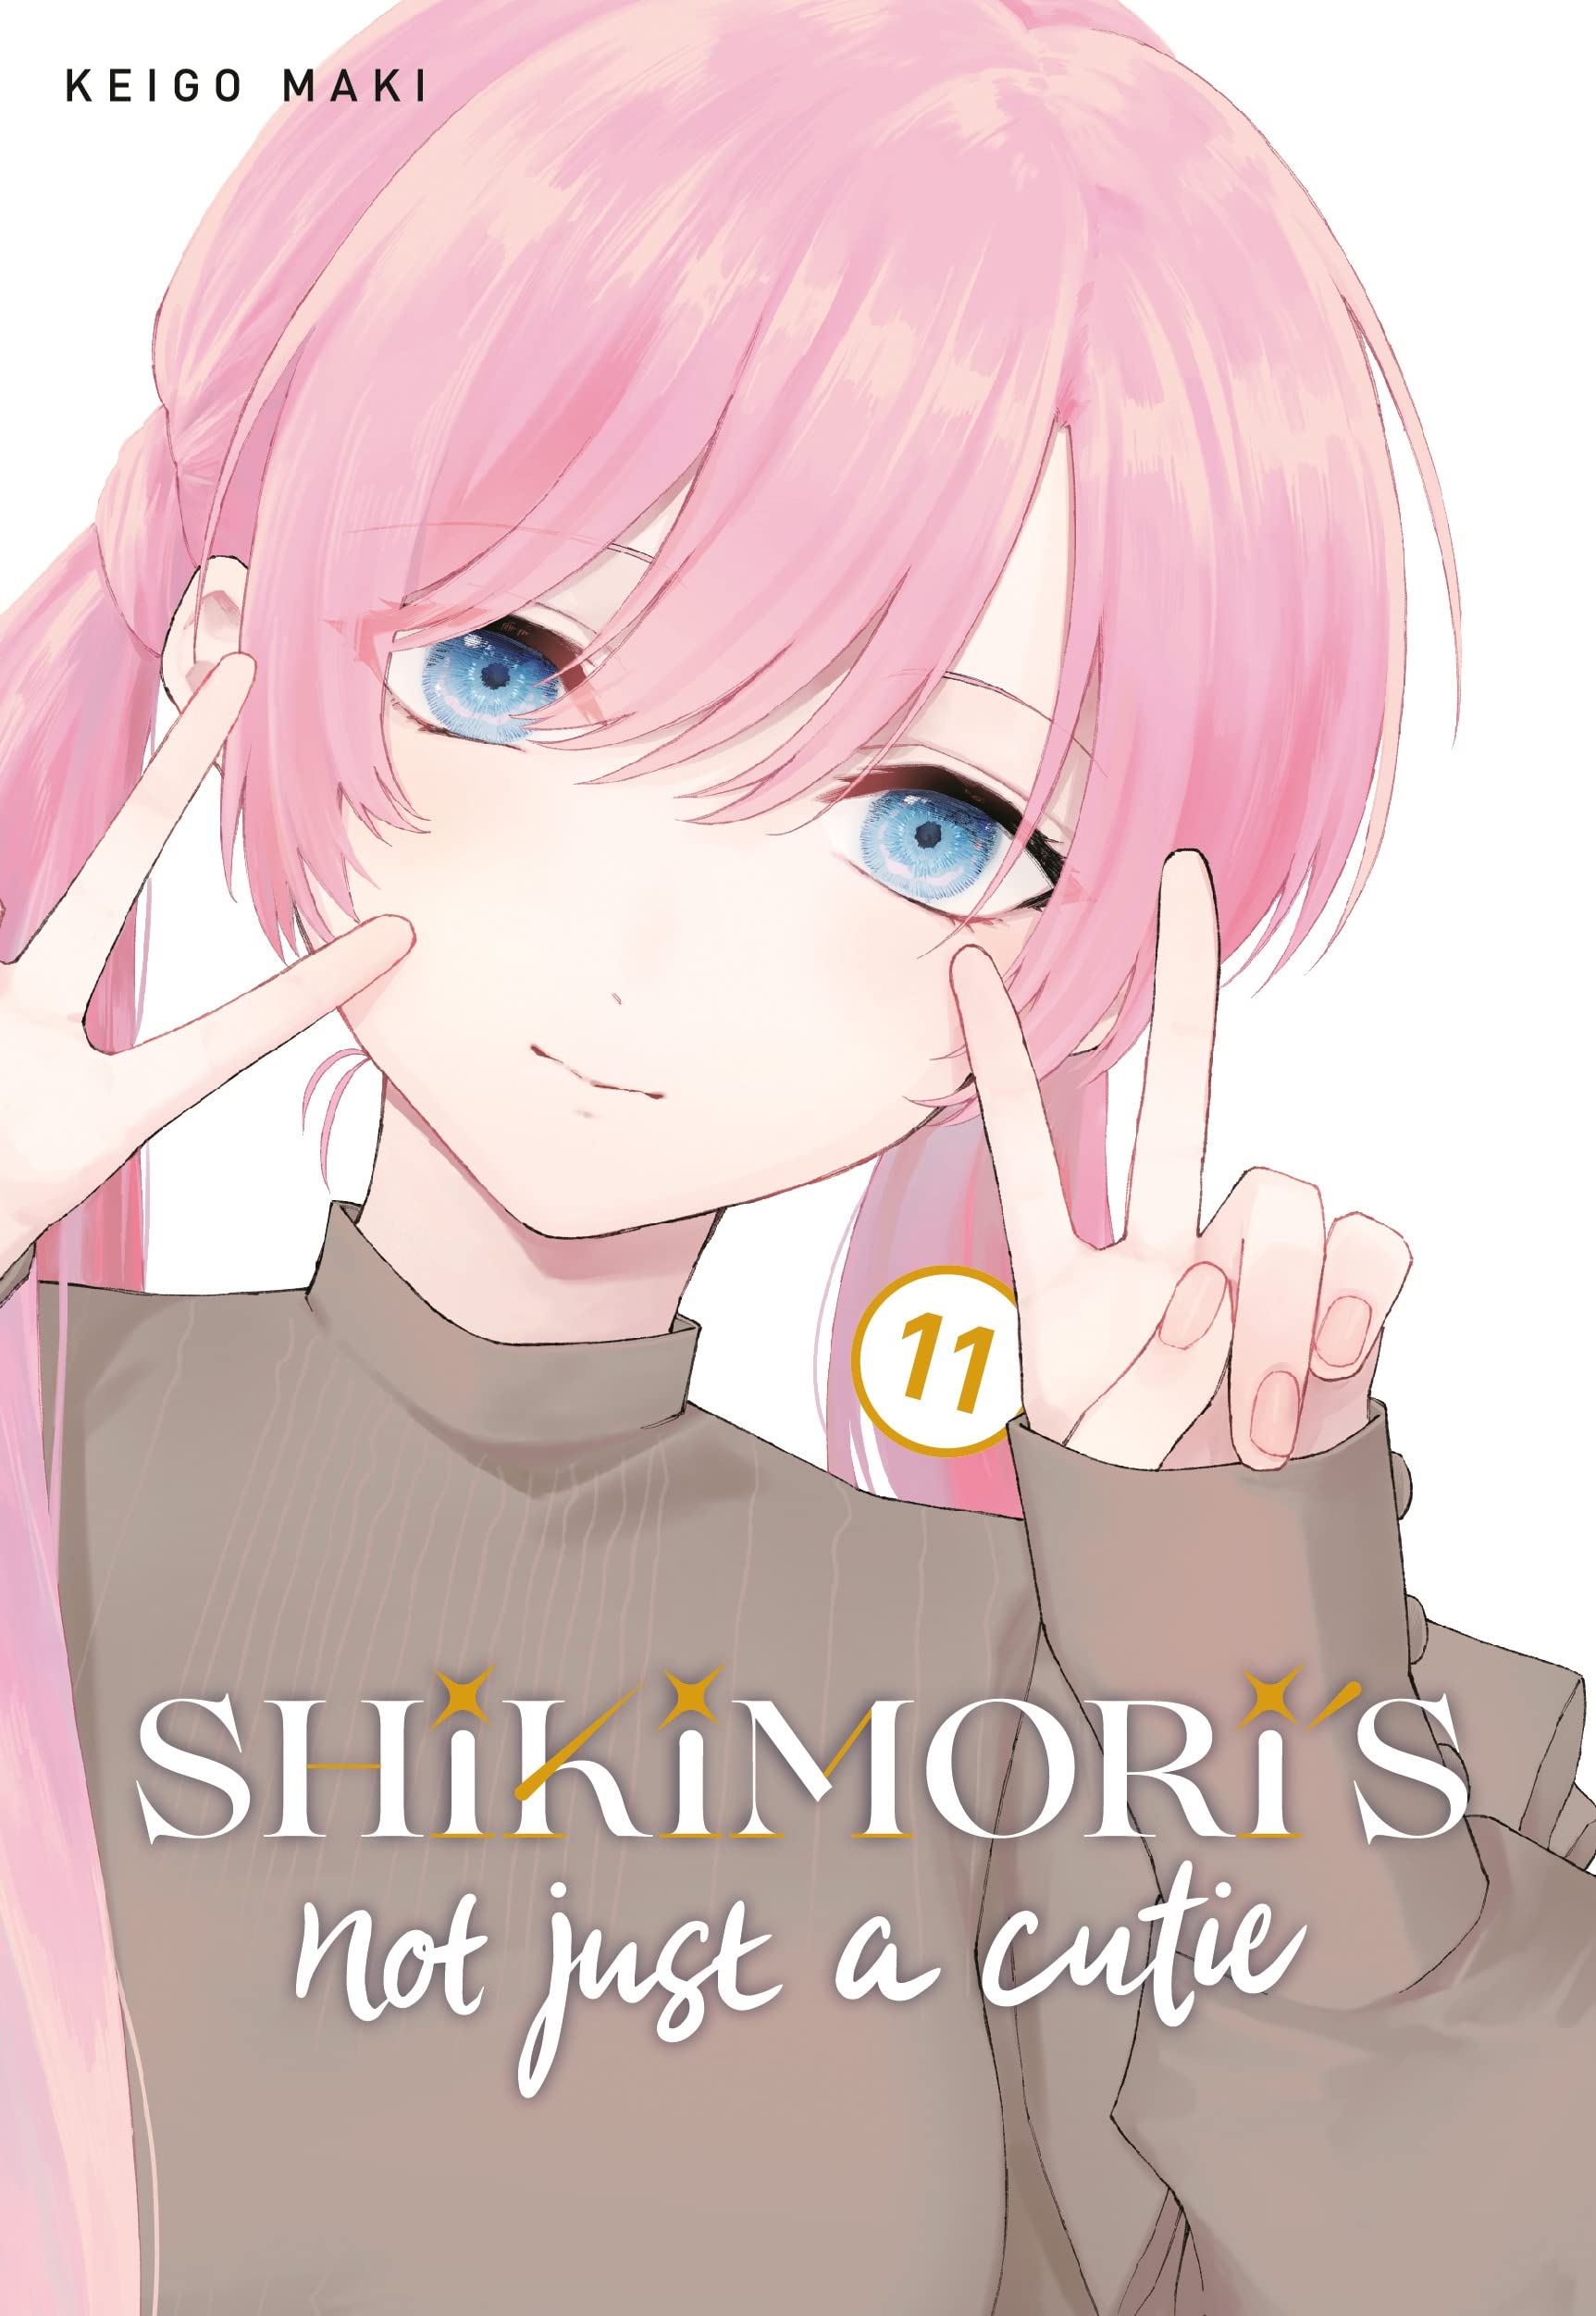 Shikimori's Not Just a Cutie Vol. 11